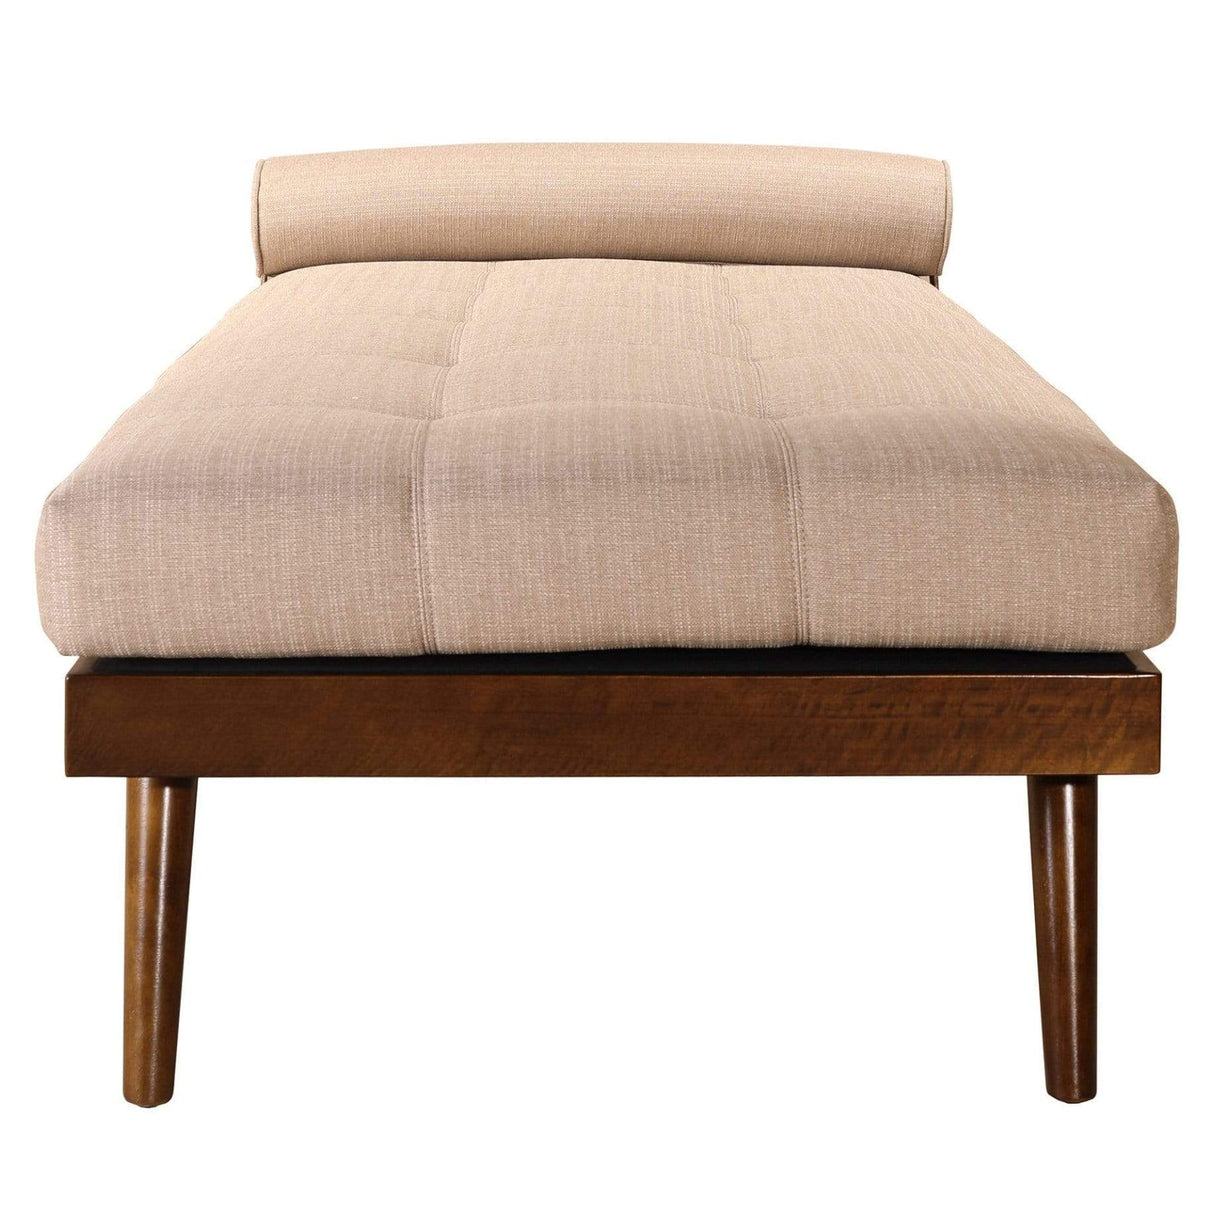 BLU Home Alessa Daybed - Sierra Furniture moes-RN-1036-23 849043036924